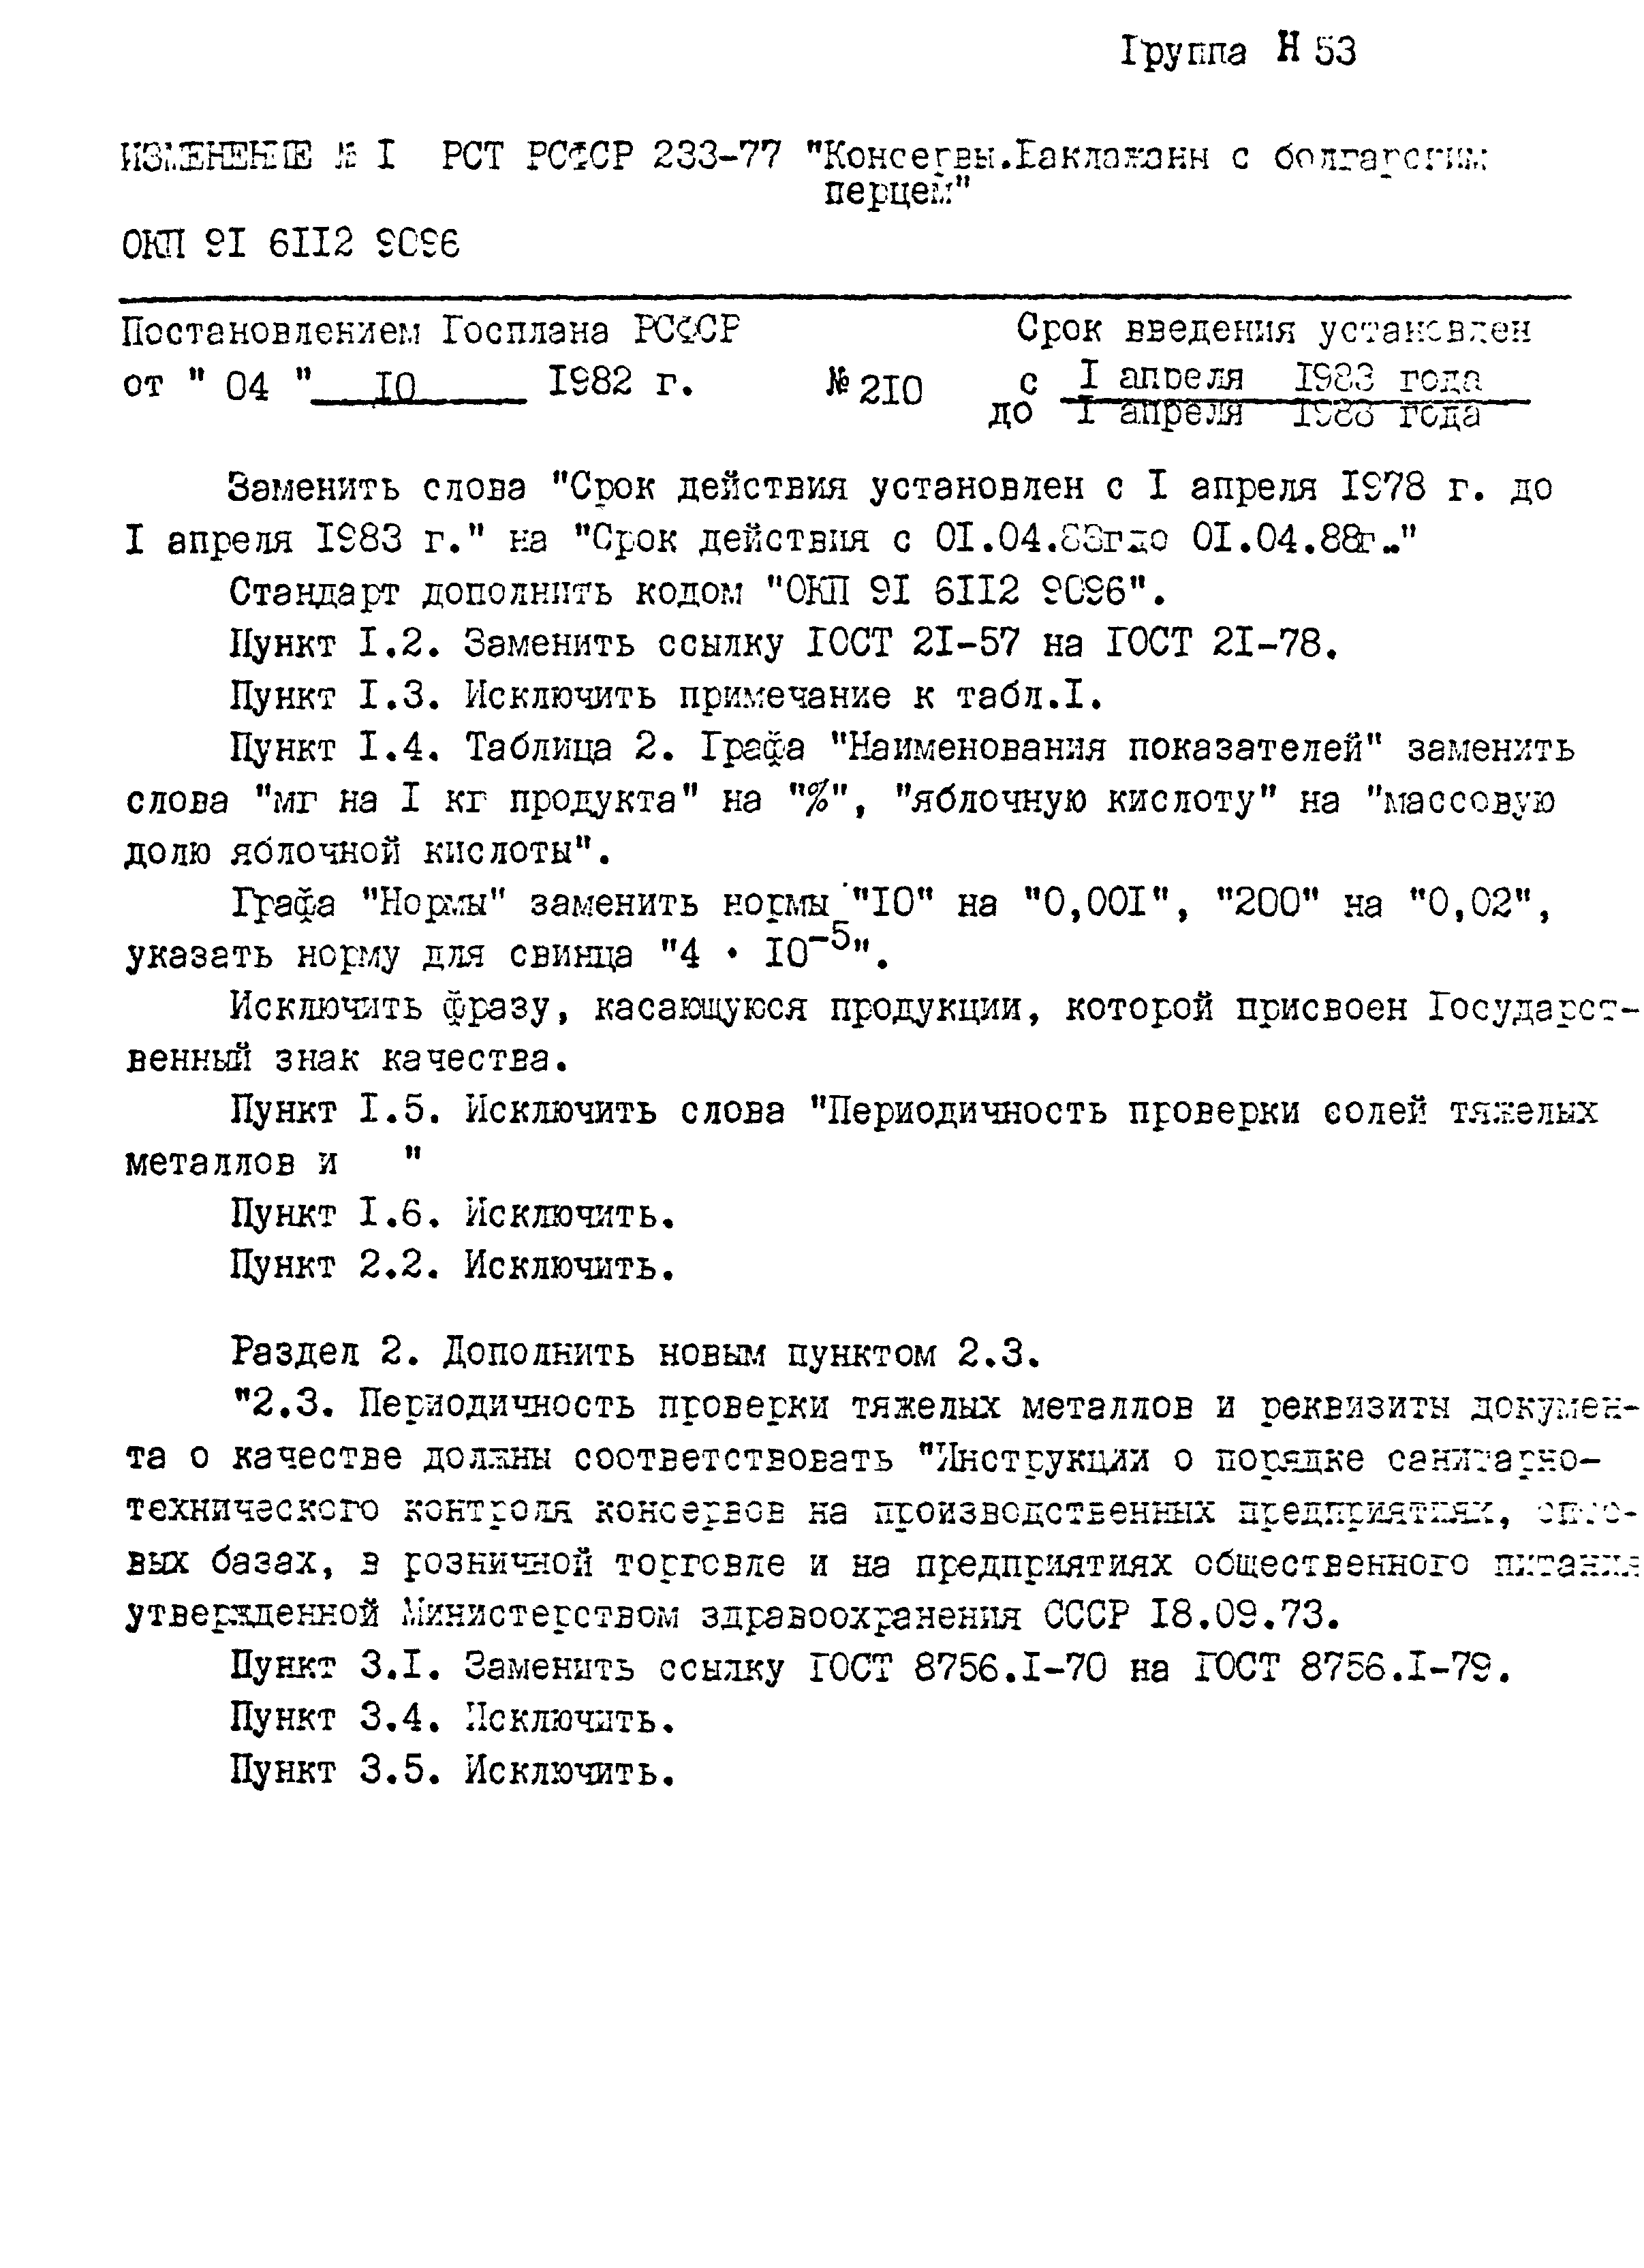 РСТ РСФСР 233-77